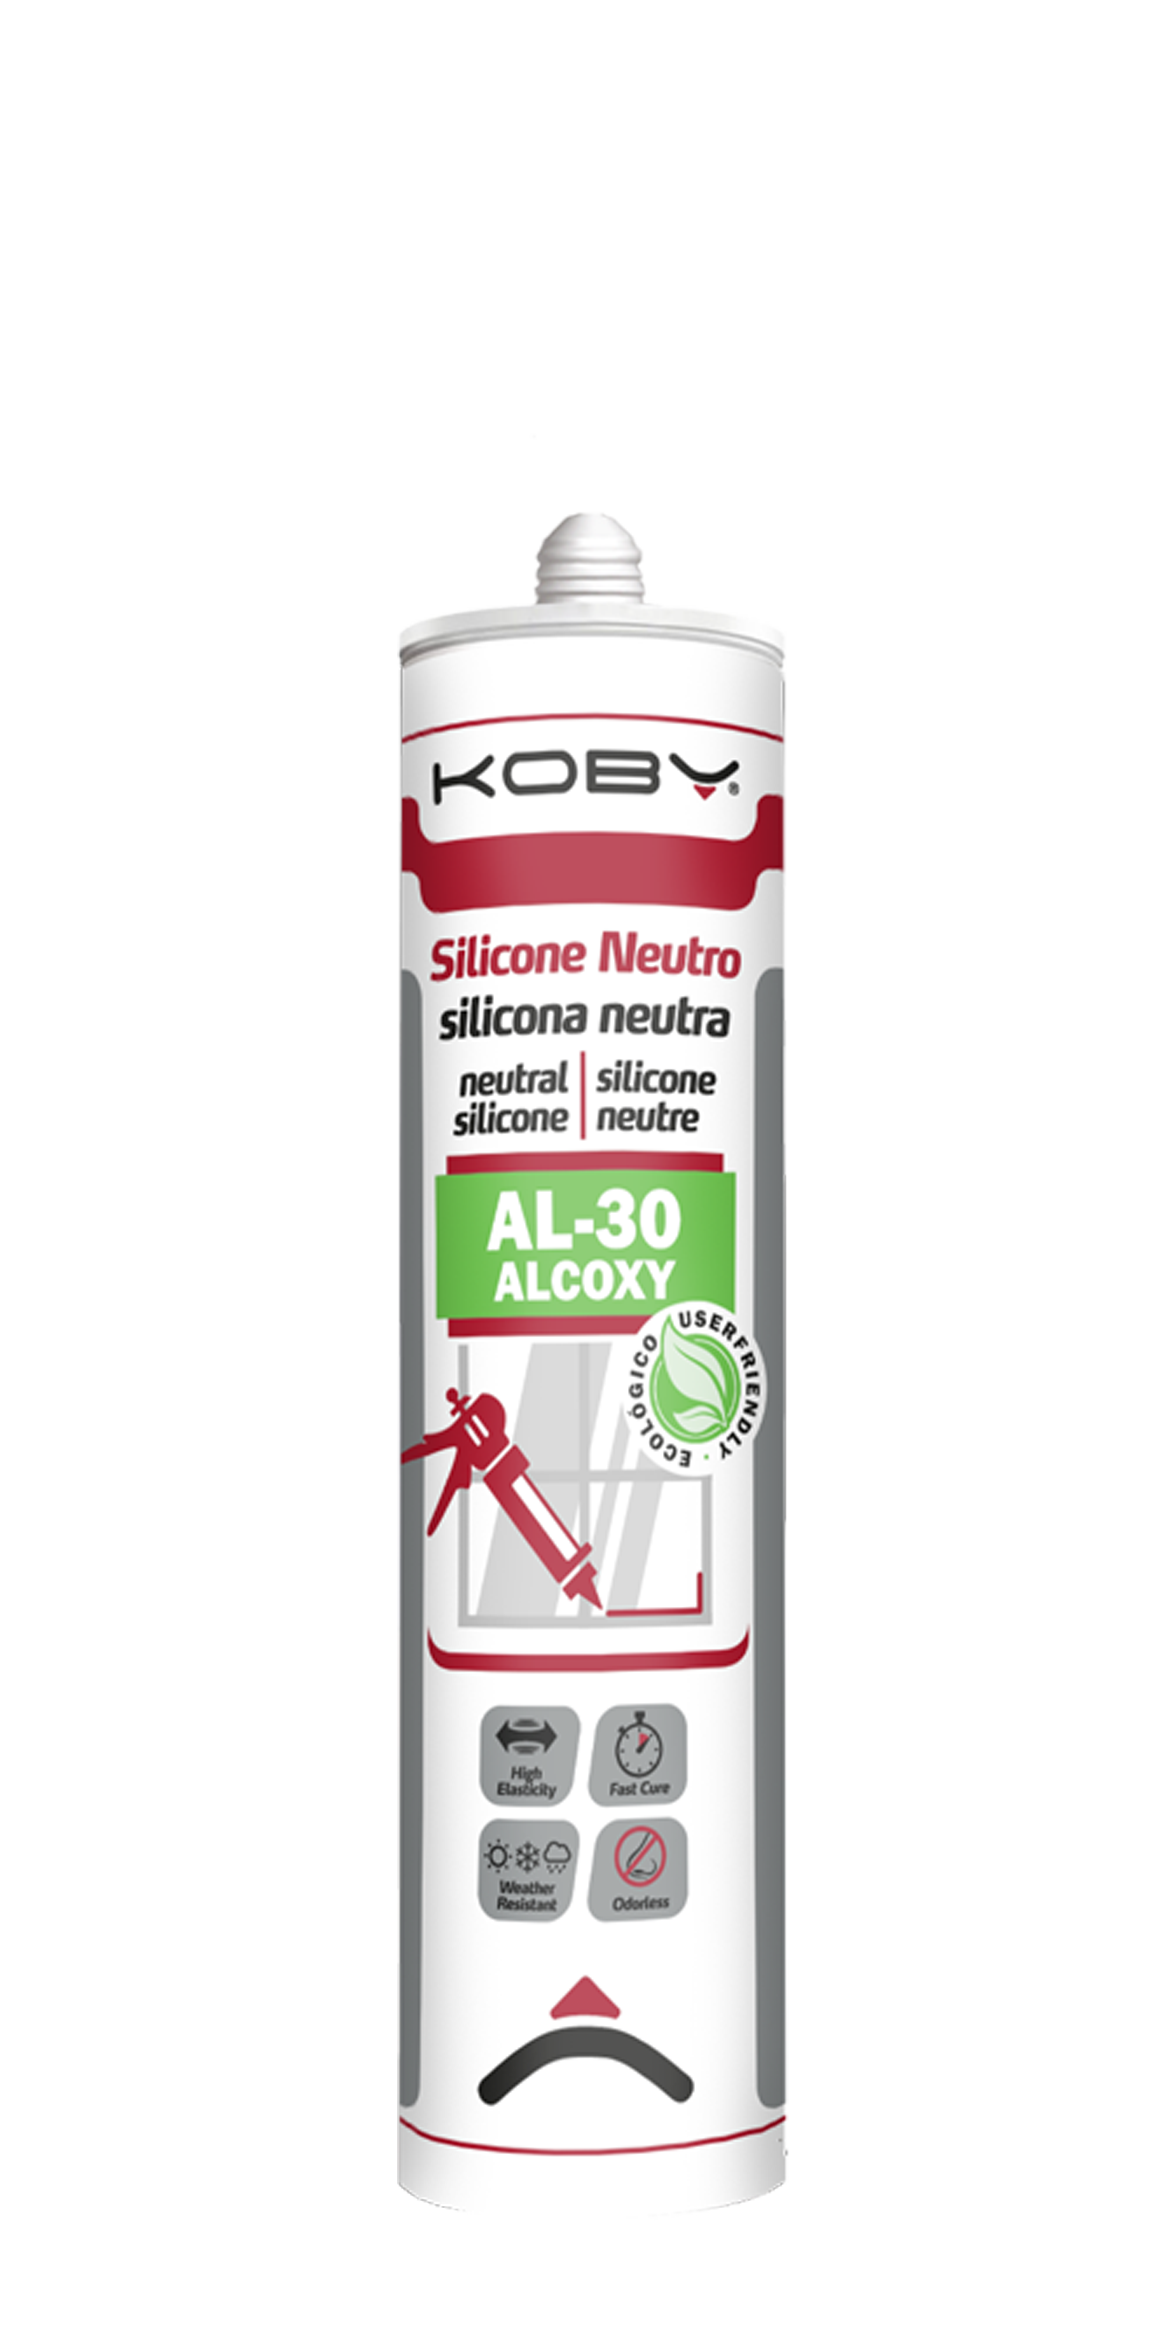 Silicone Neutro AL-30 Alcoxy